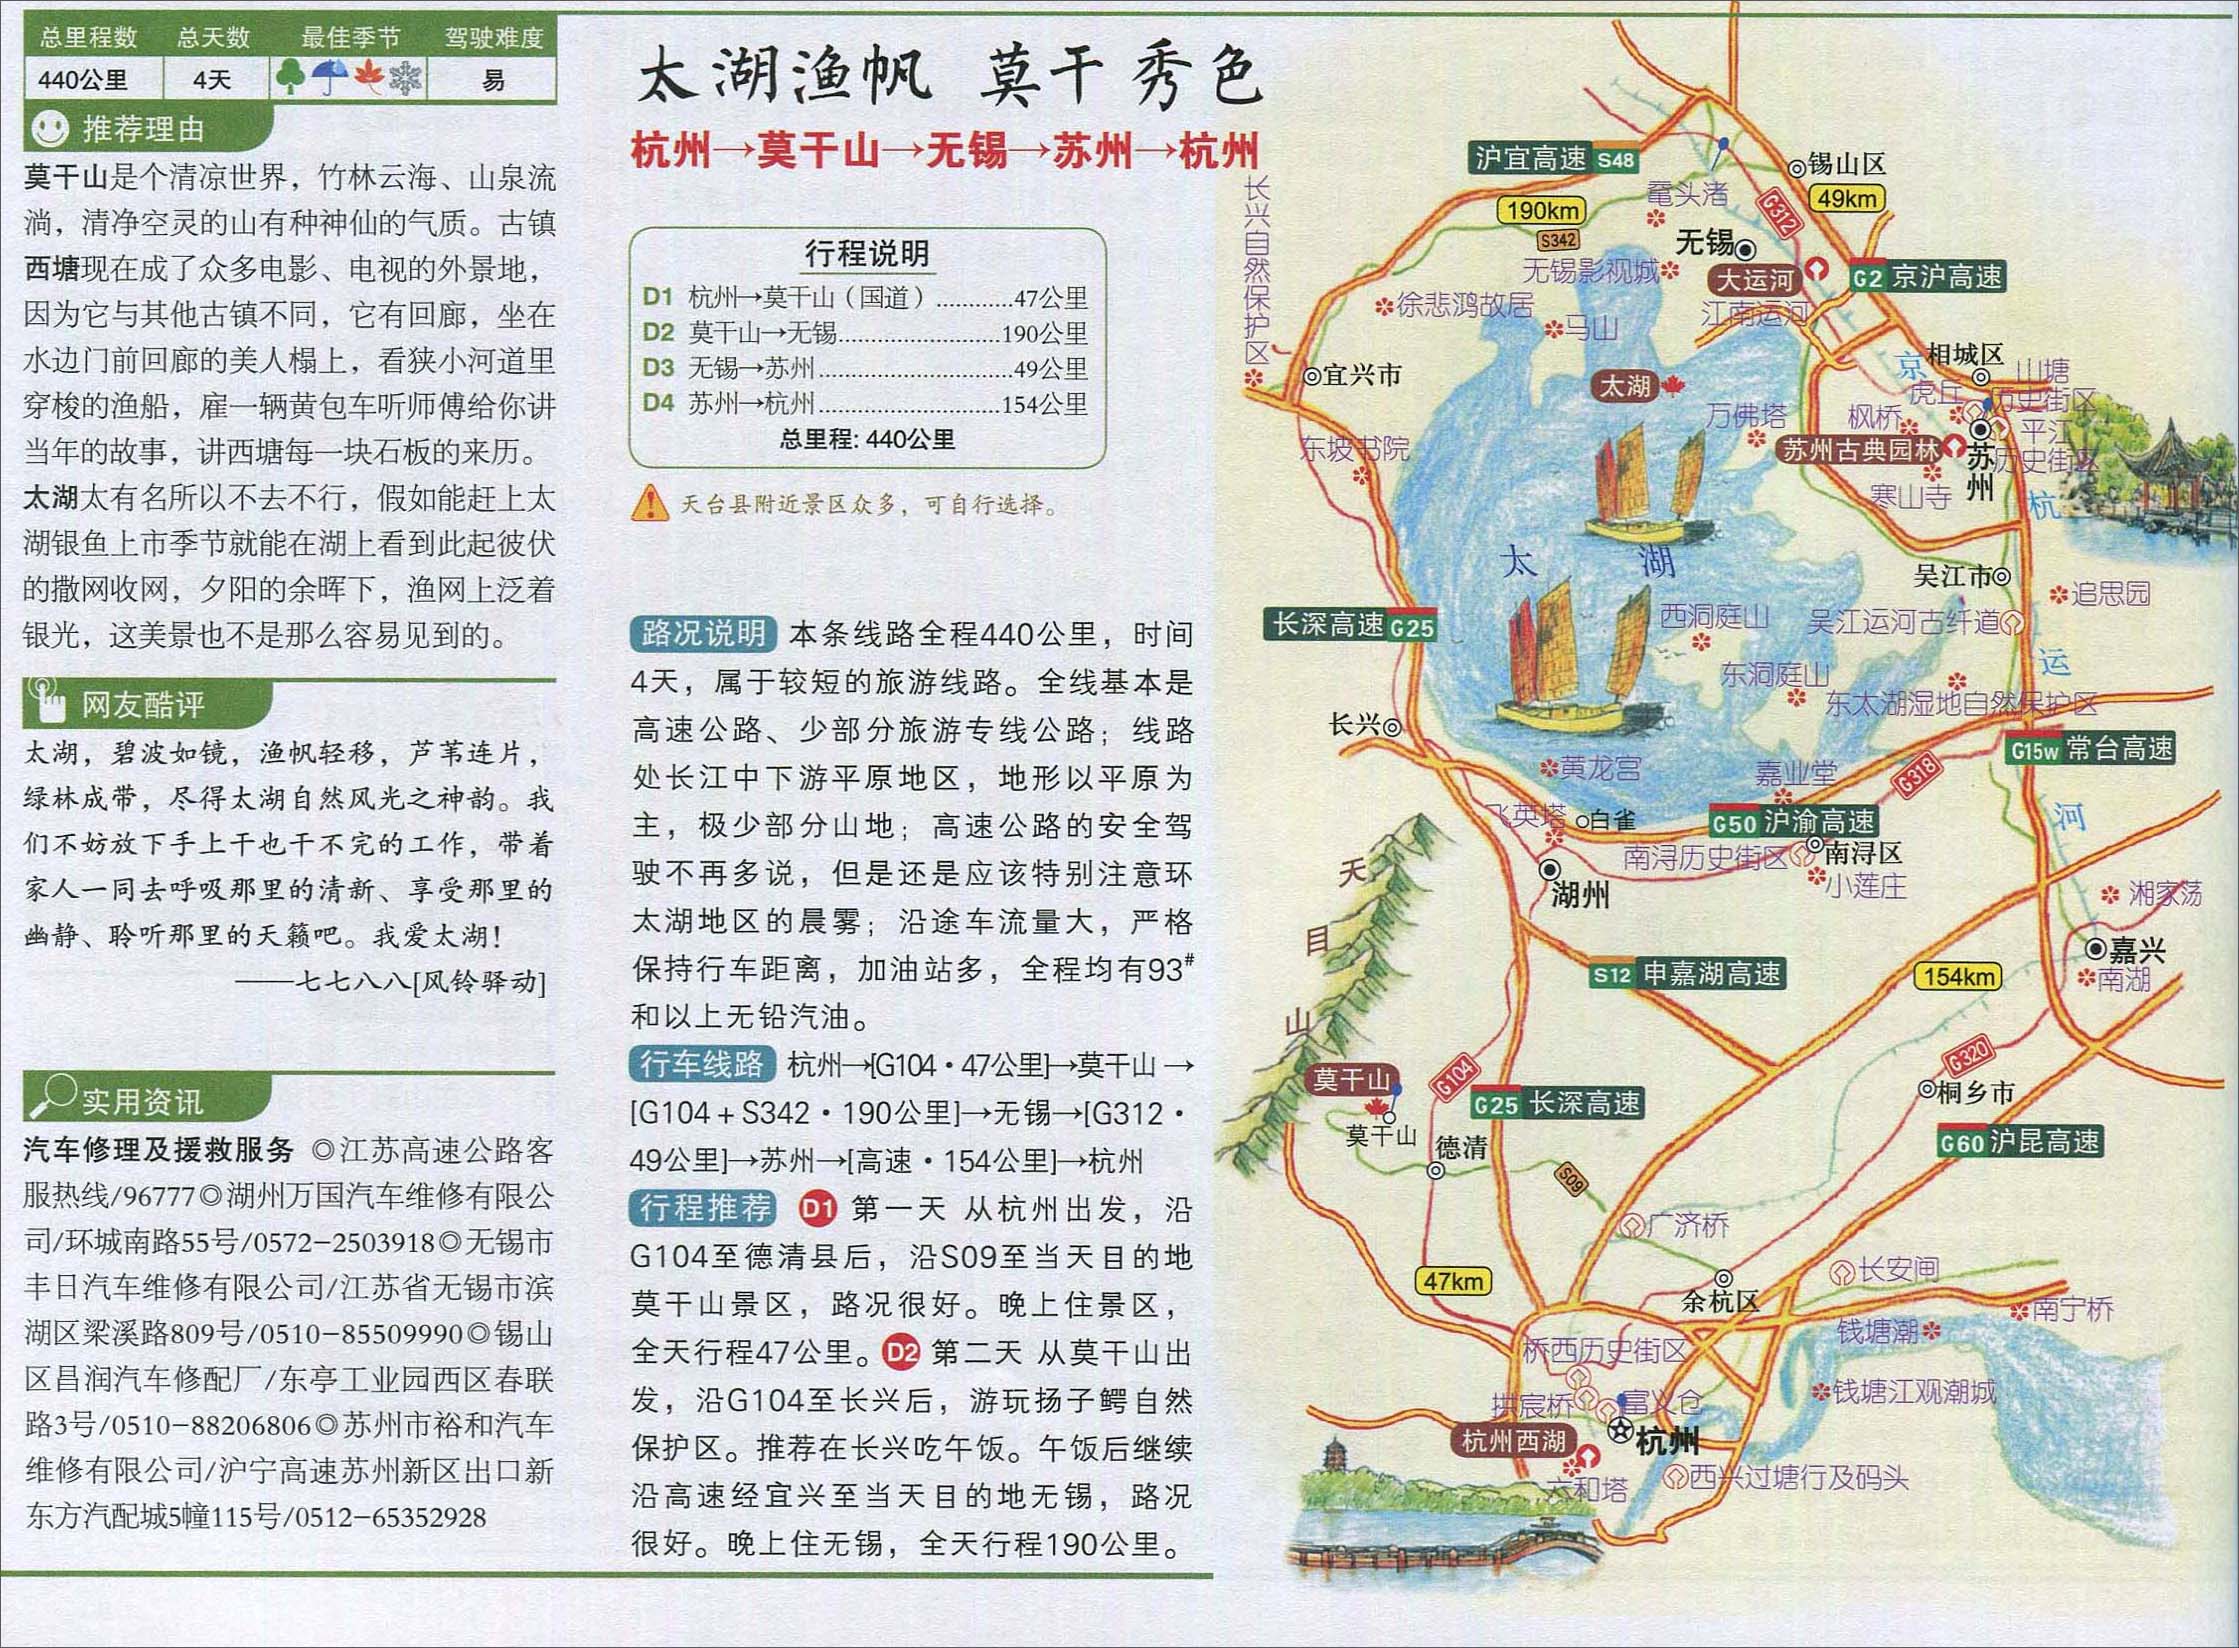 杭州至无锡自驾游路线图_浙江旅游地图库_地图窝图片